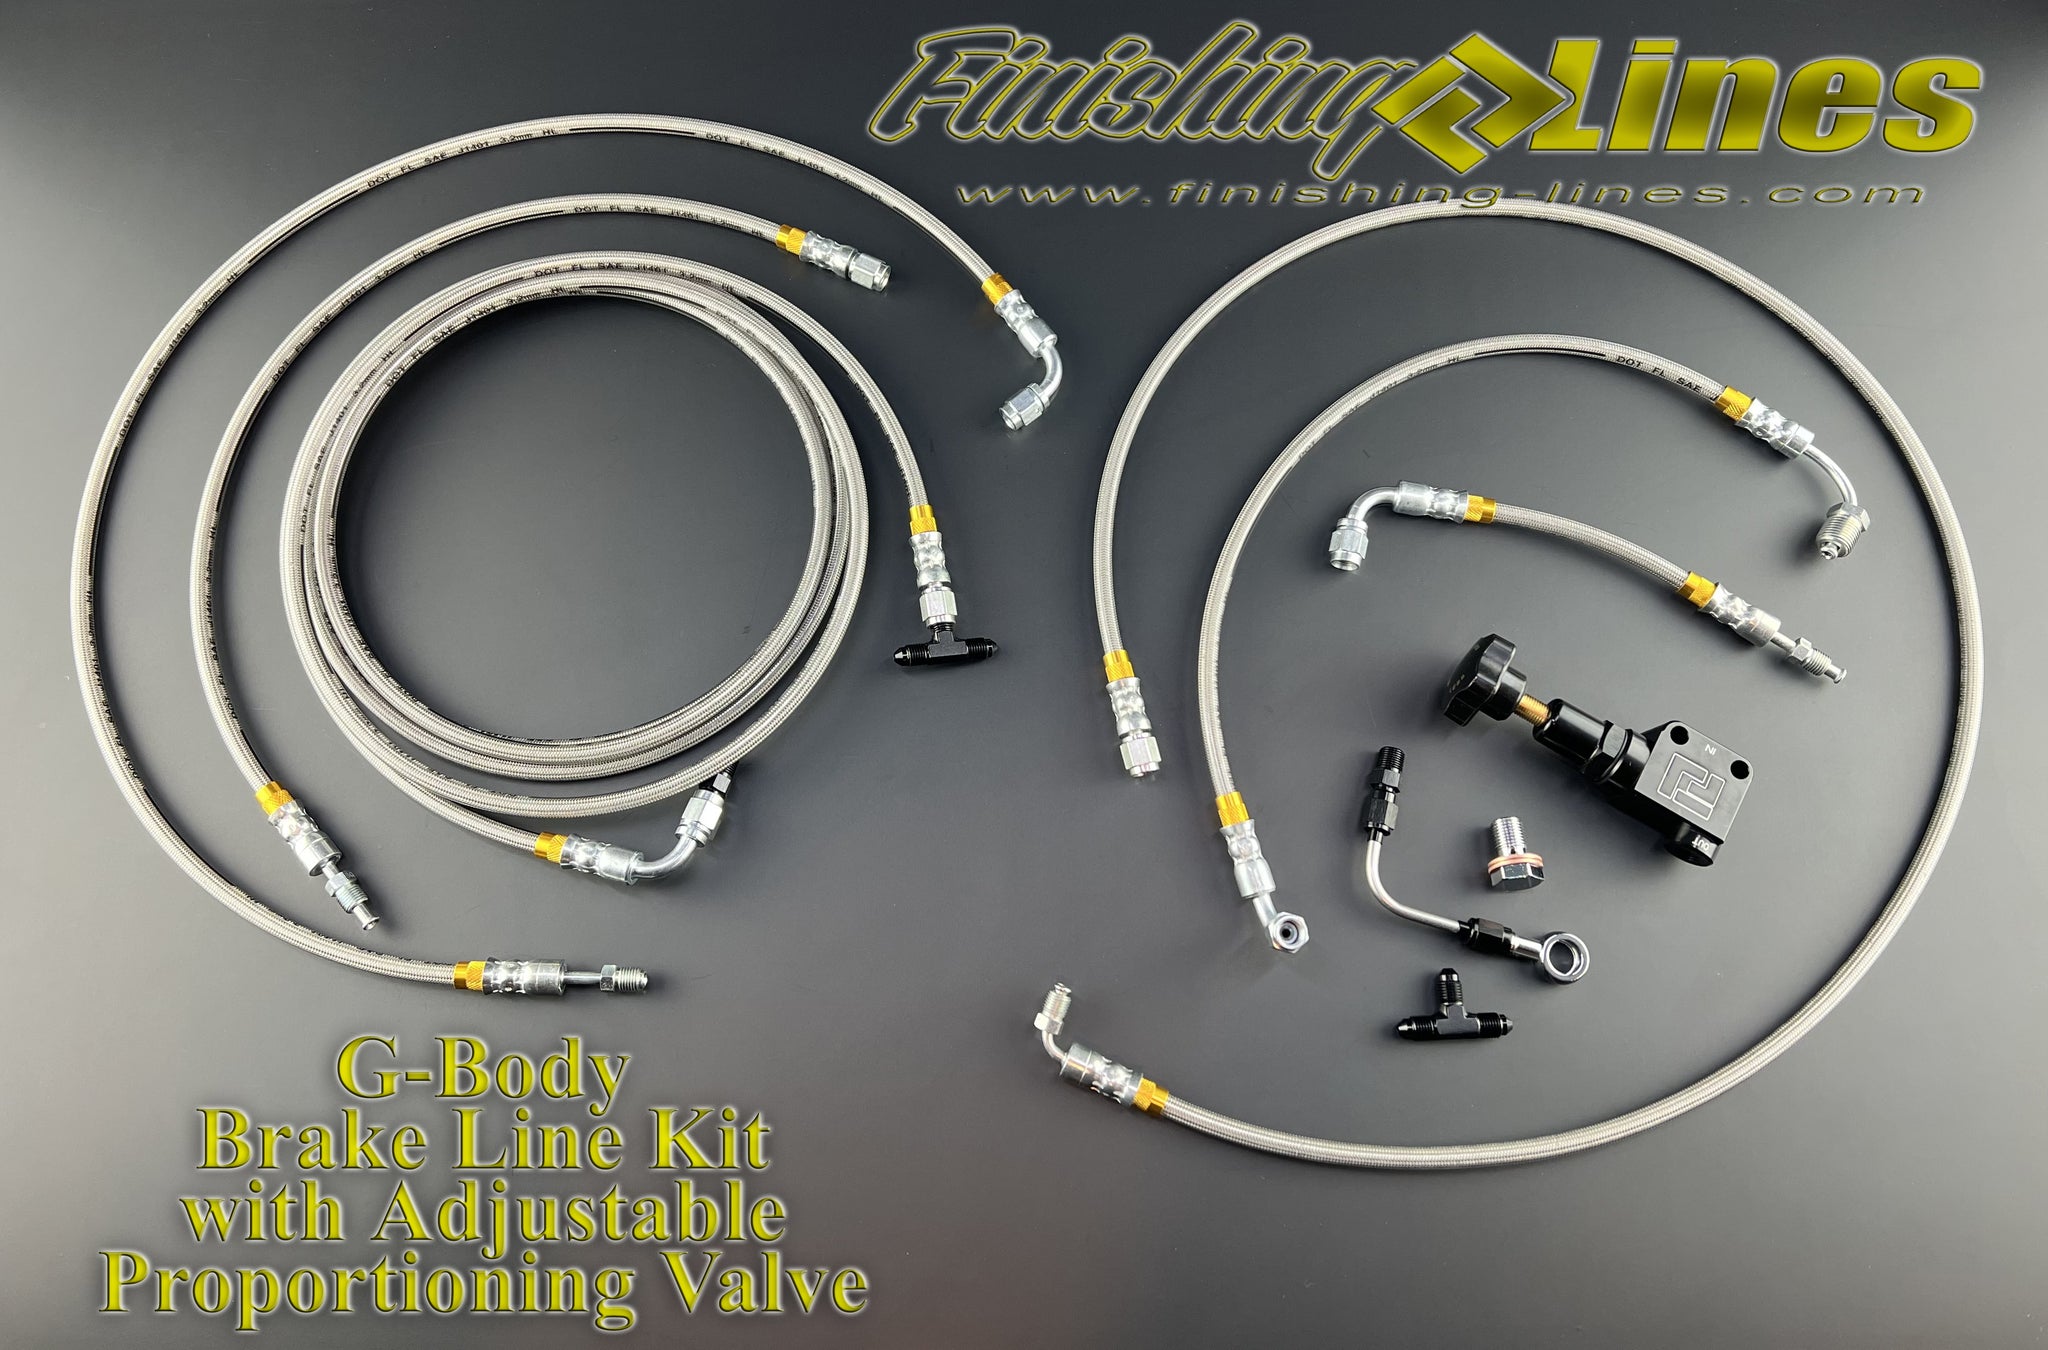 G-Body Brake Line Kit With Adjustable Proportioning Valve - For Rear Drum Brake Setups